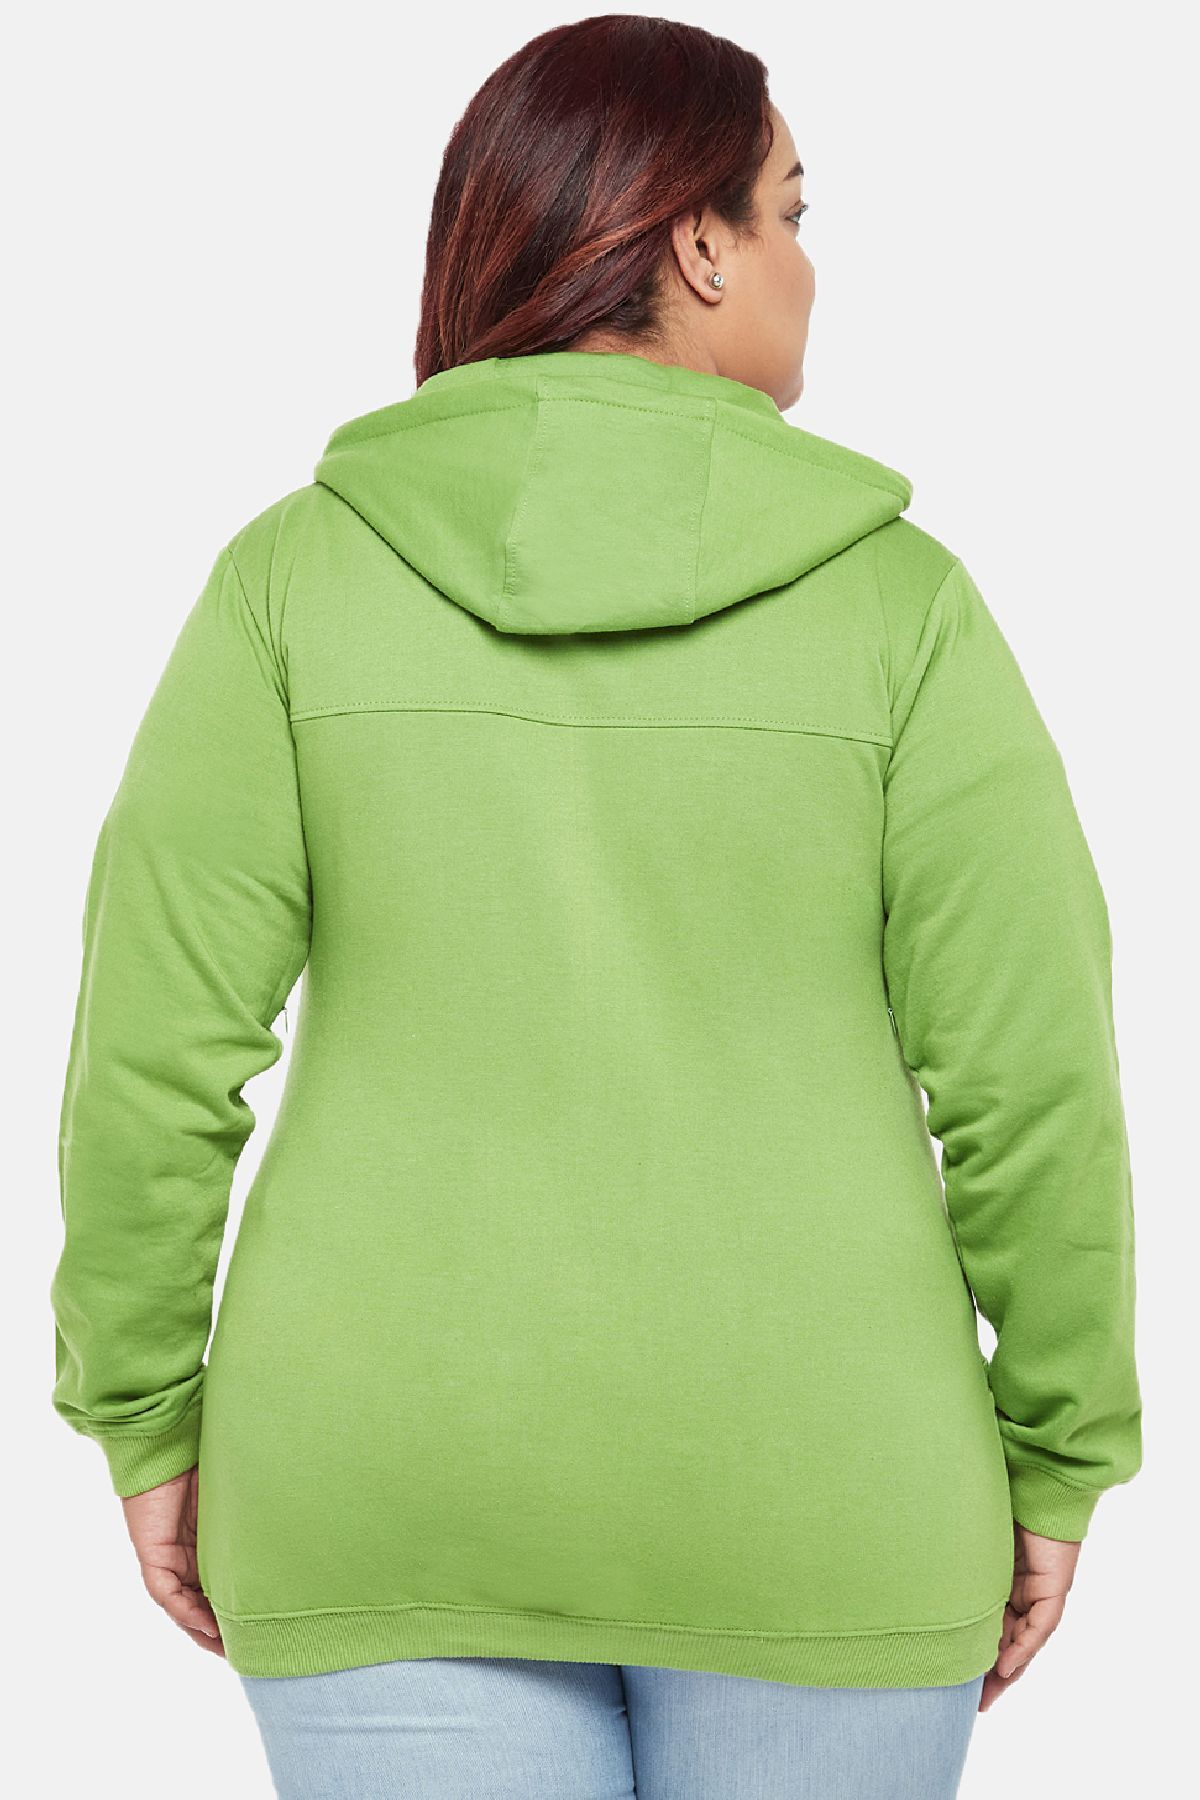 Lime Plus Size Sweatshirt | Women